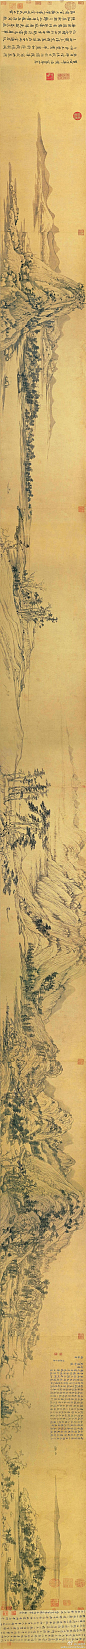 【中国传世名画之——《富春山居图》】图纵33厘米，横636.9厘米，纸本，水墨。始画于元至正七年(1347)，于至正十年完成。该画于清代顺治年间曾遭火焚，断为两段，前半卷被另行装裱，重新定名为《剩山图》，现藏浙江省博物馆。被誉为浙江博物馆“镇馆之宝”。另一段称为《无用师卷》，现藏台北故宫。